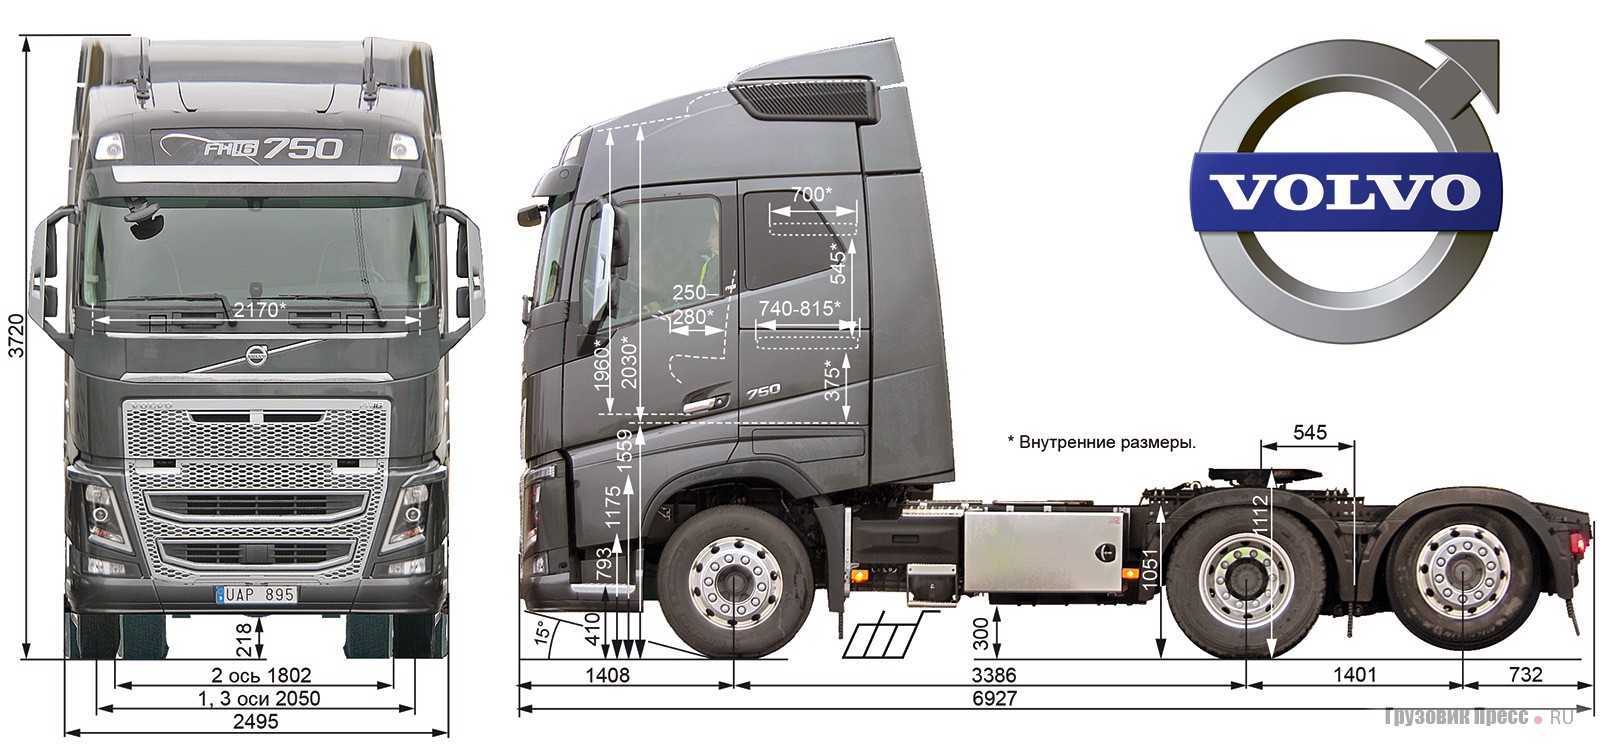 Volvo fh - безопасный и комфортный грузовик для бизнеса